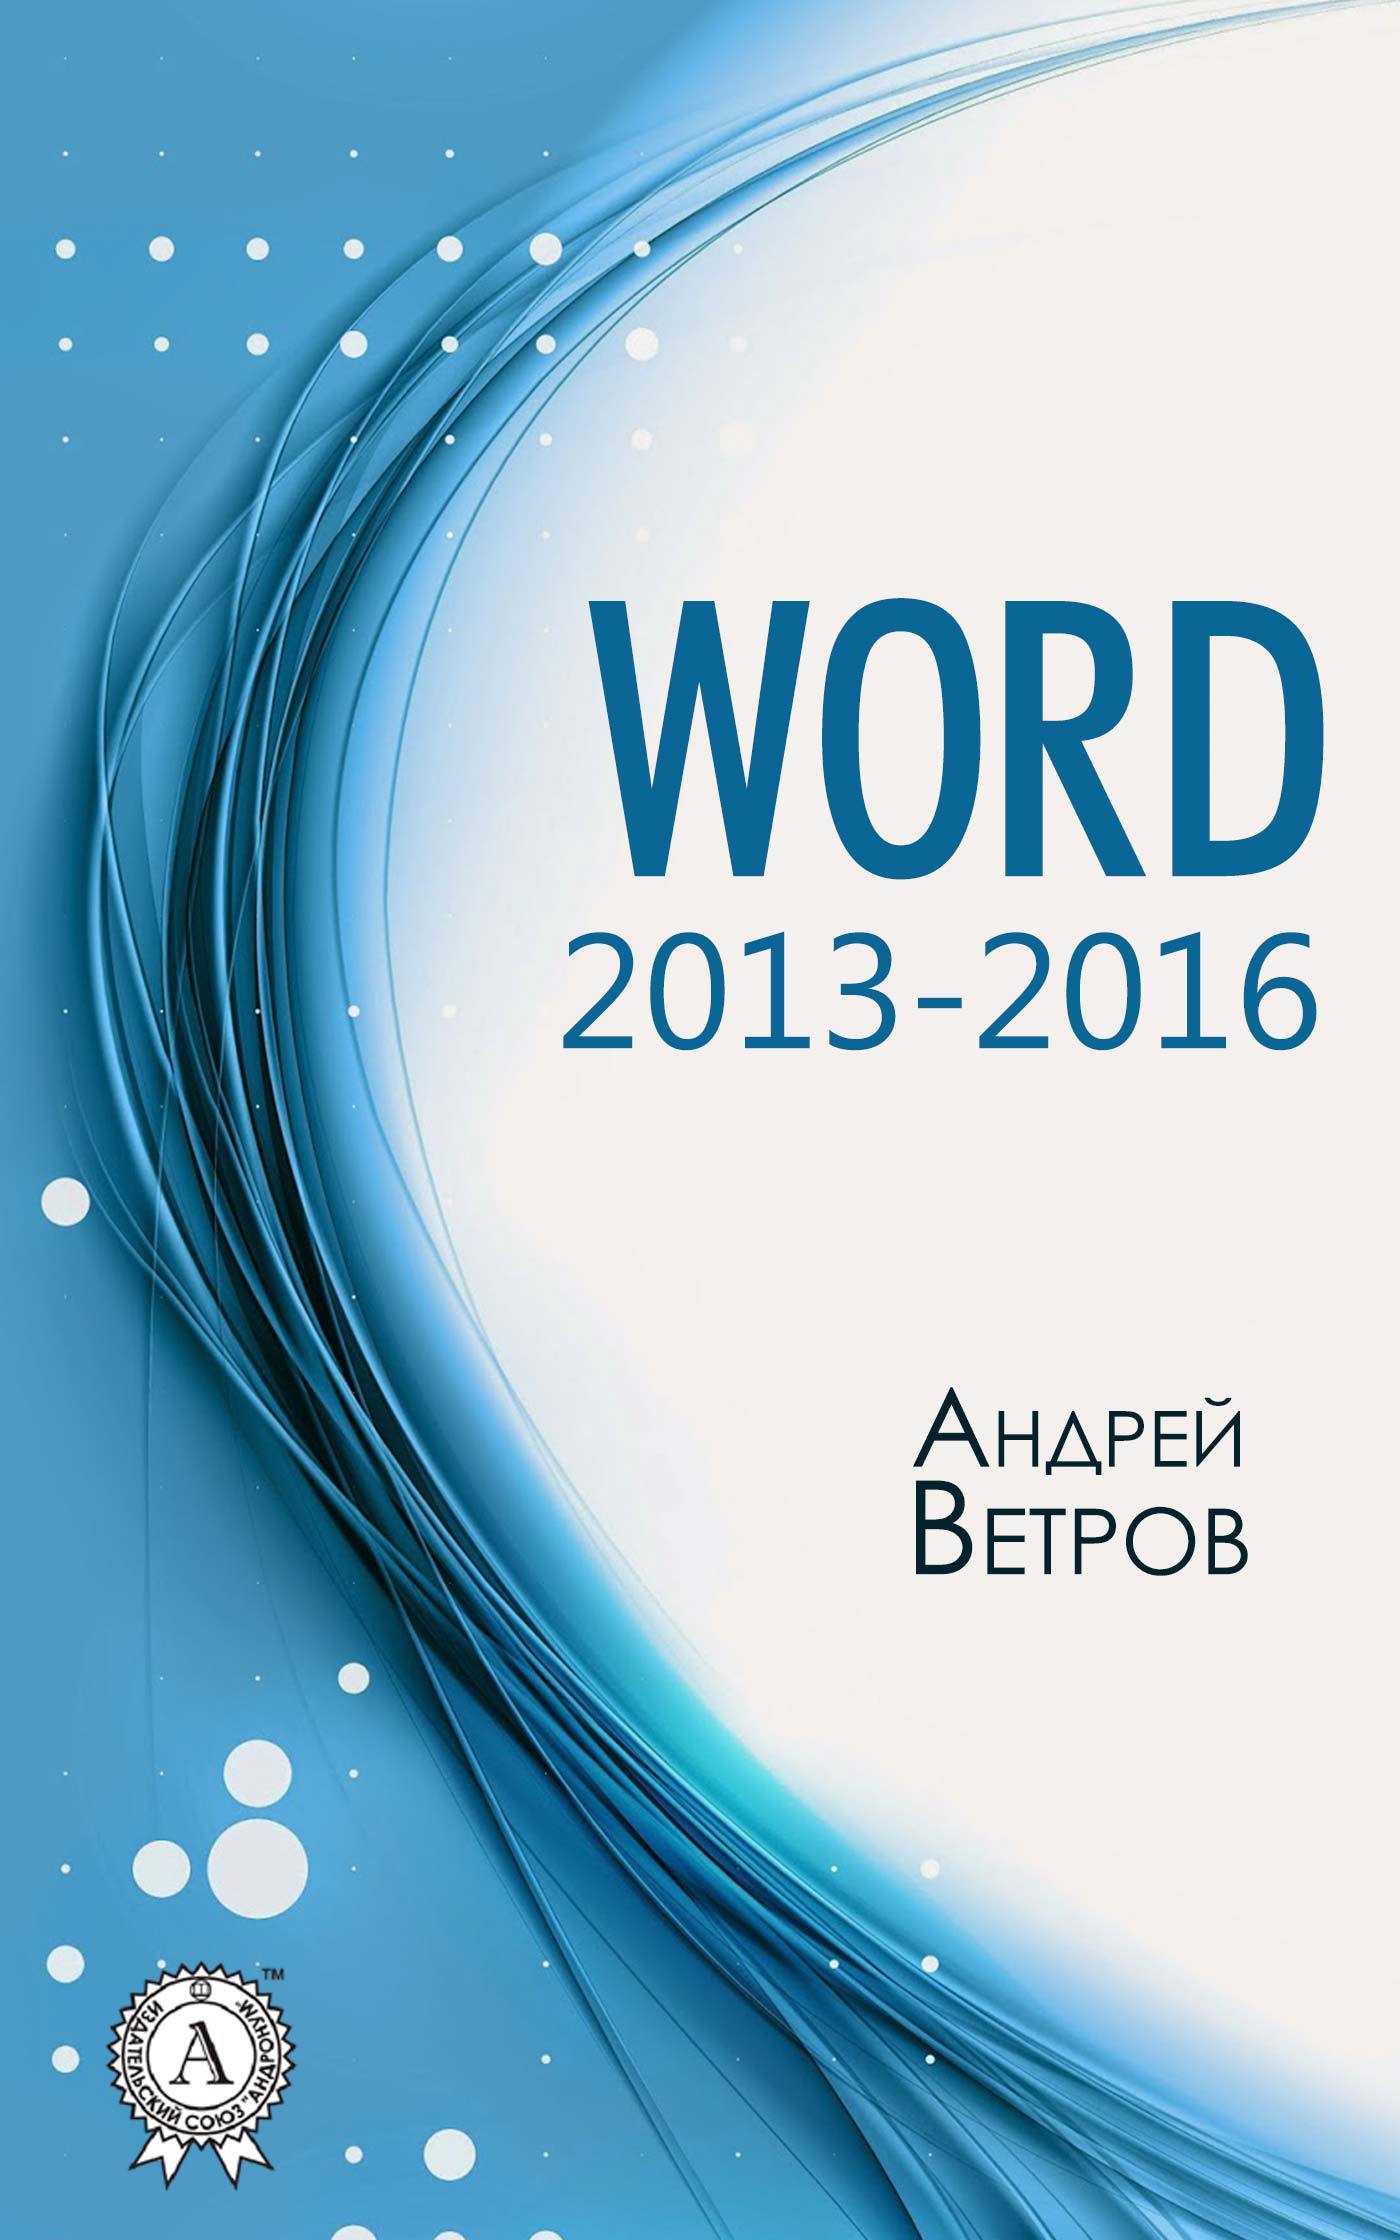 Книга  Word 2013—2016 созданная Андрей Ветров может относится к жанру ОС и сети, программы, руководства. Стоимость электронной книги Word 2013—2016 с идентификатором 27101389 составляет 149.00 руб.